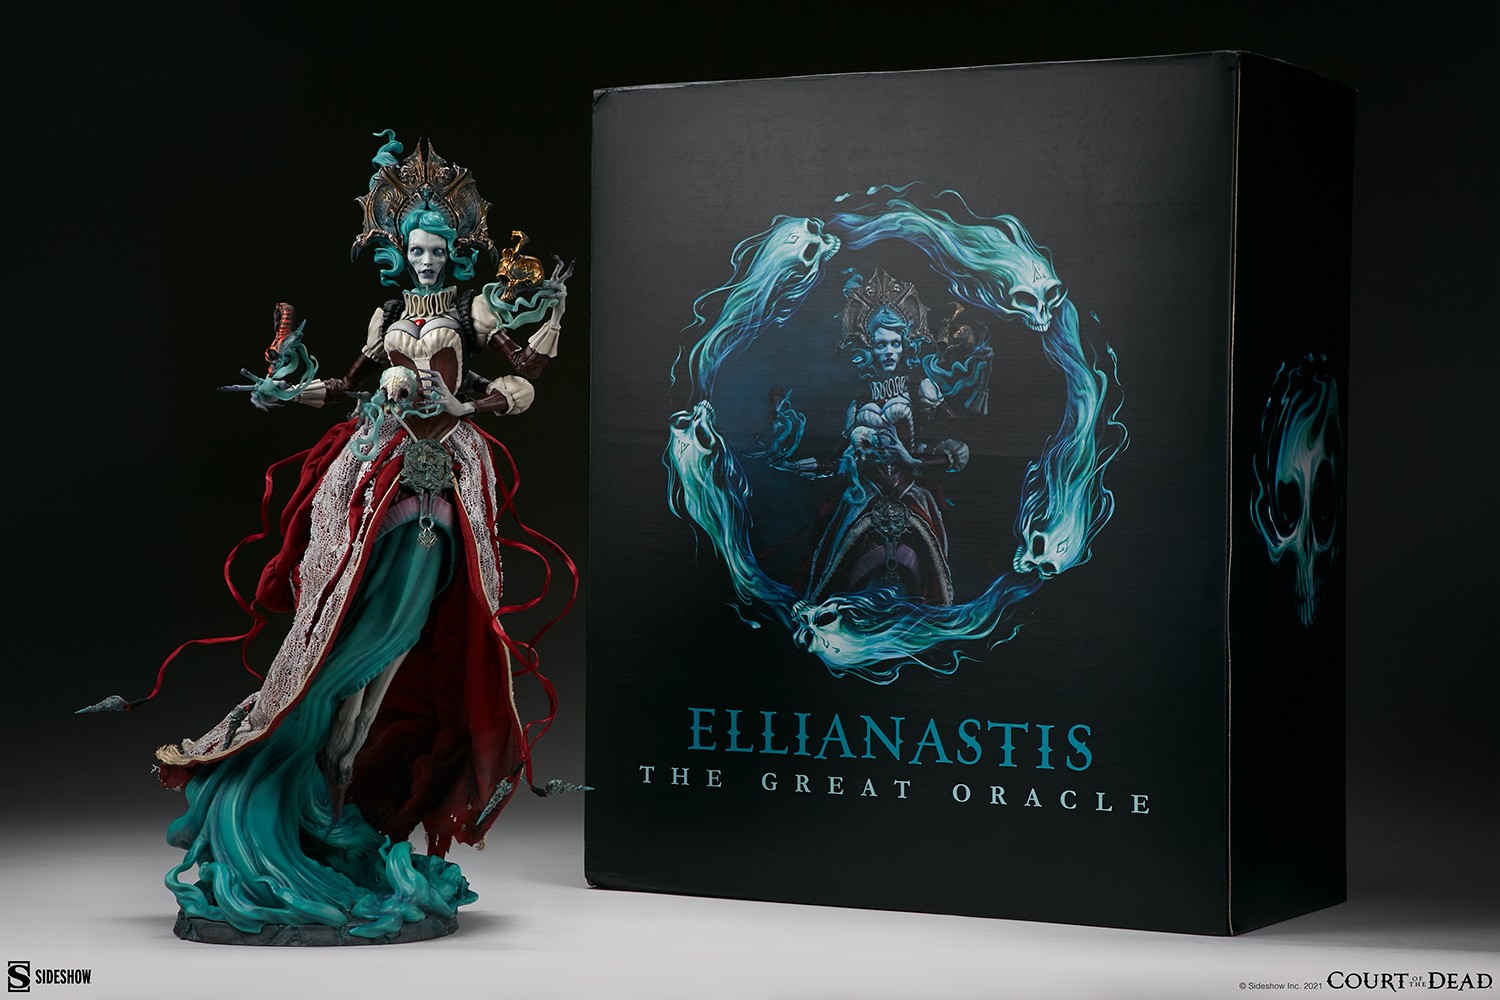 Ellianastis: The Great Oracle